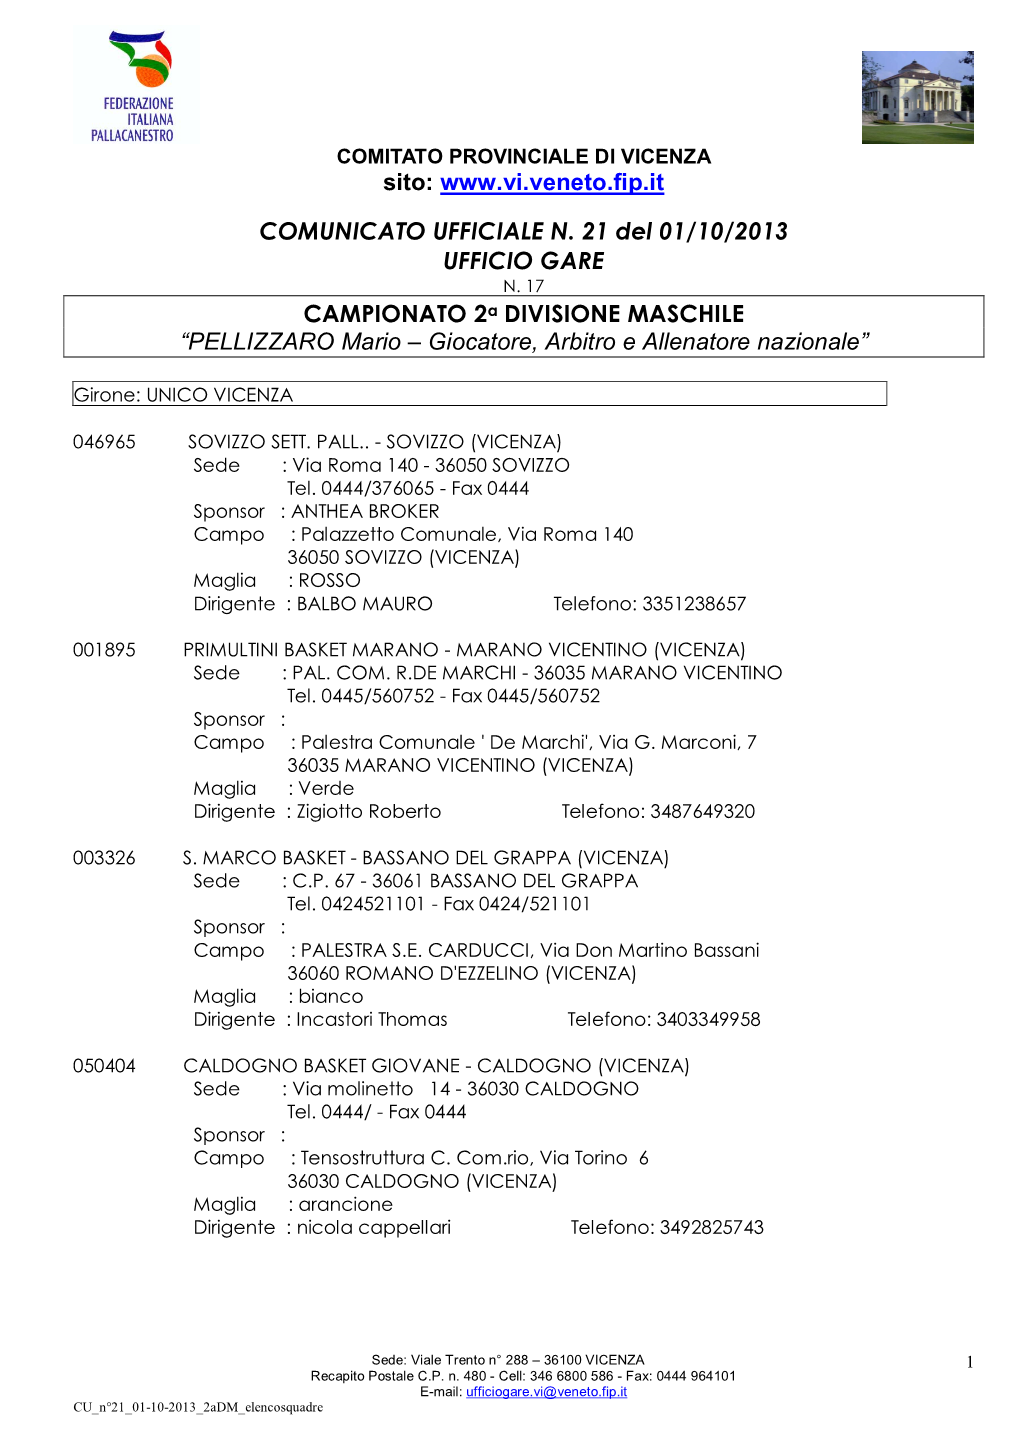 Sito: COMUNICATO UFFICIALE N. 21 Del 01/10/2013 UFFICIO GARE CAMPIONATO 2A DIVISIONE MASCHILE “PELLIZZARO